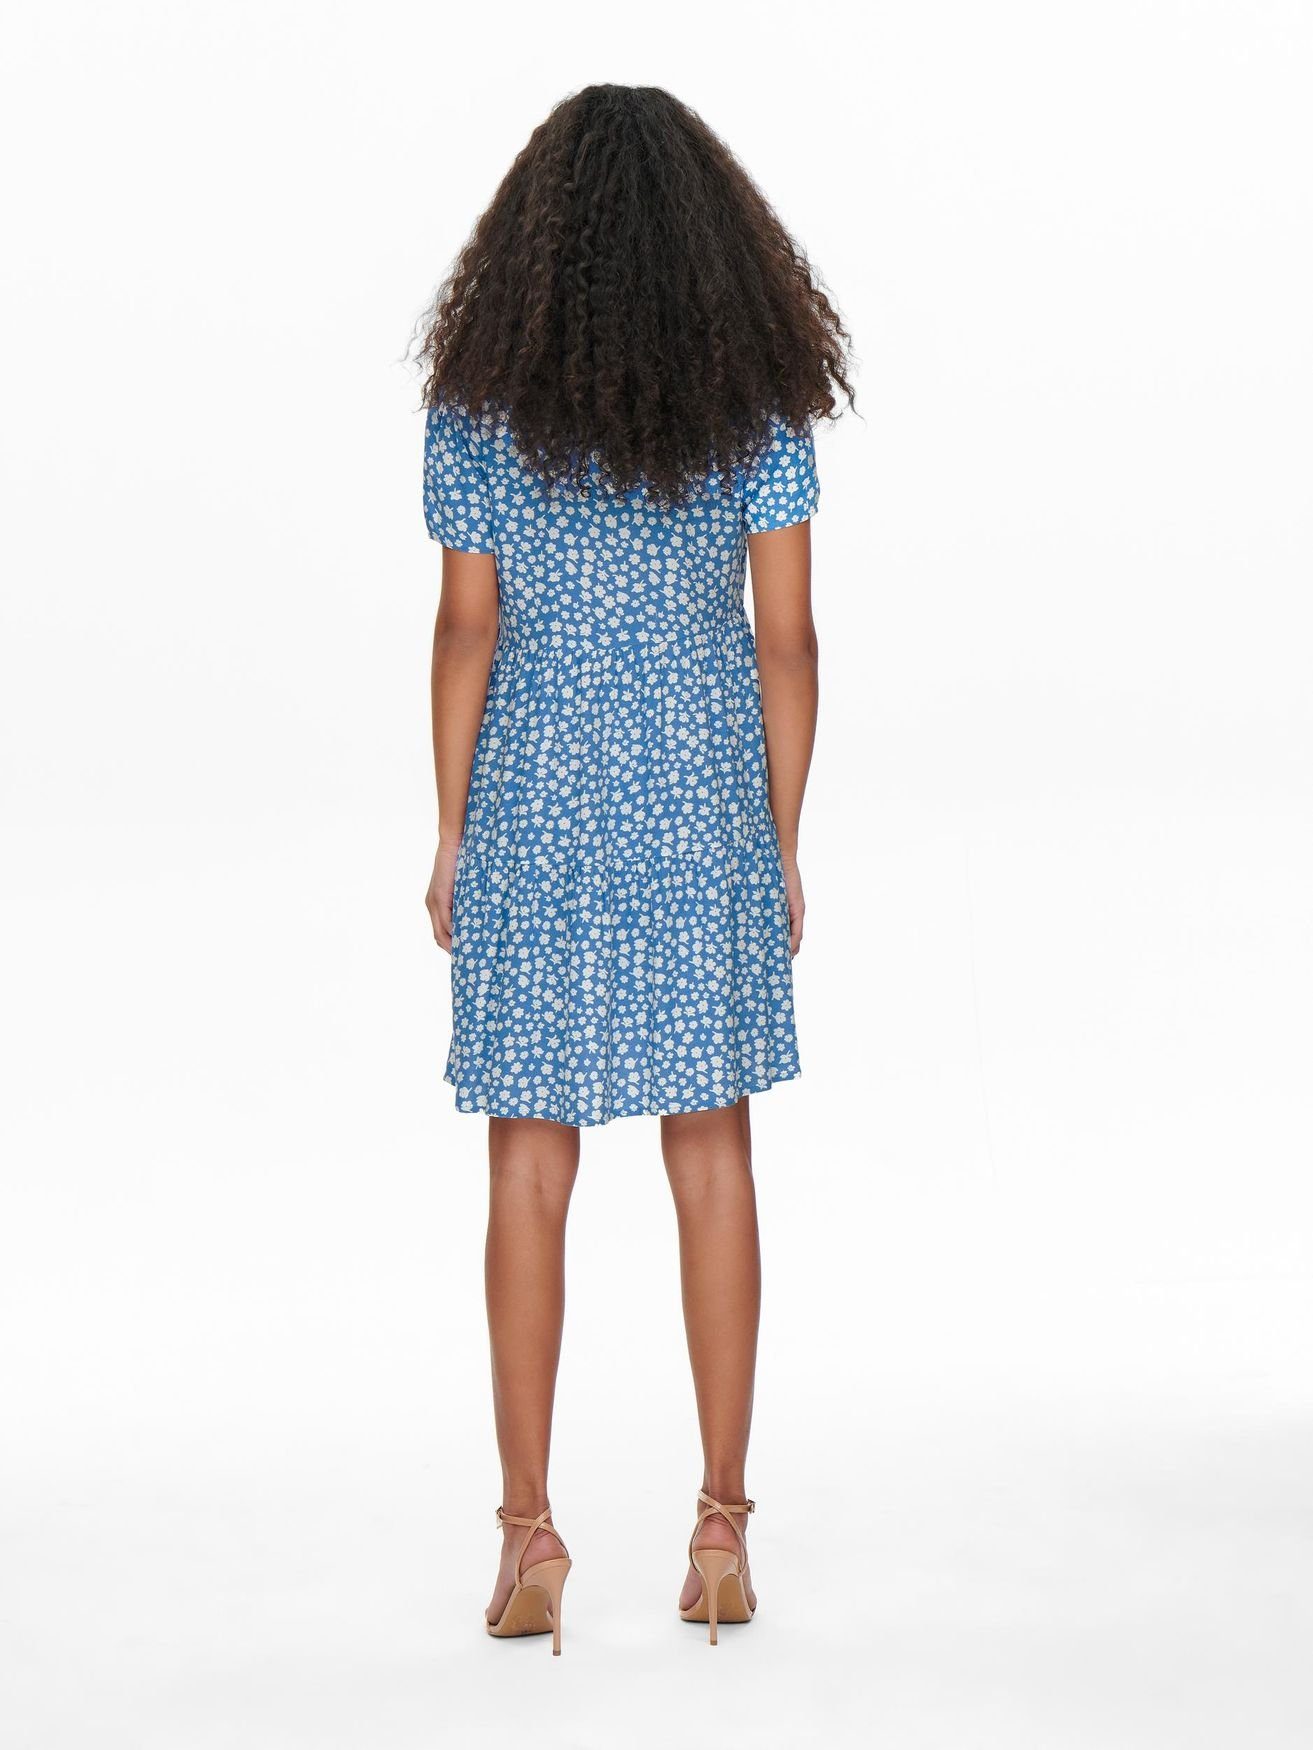 ONLY Shirtkleid (knielang) Kleid ONLZALLY 4928 in Kurzes Blusen V-Ausschnitt Blau